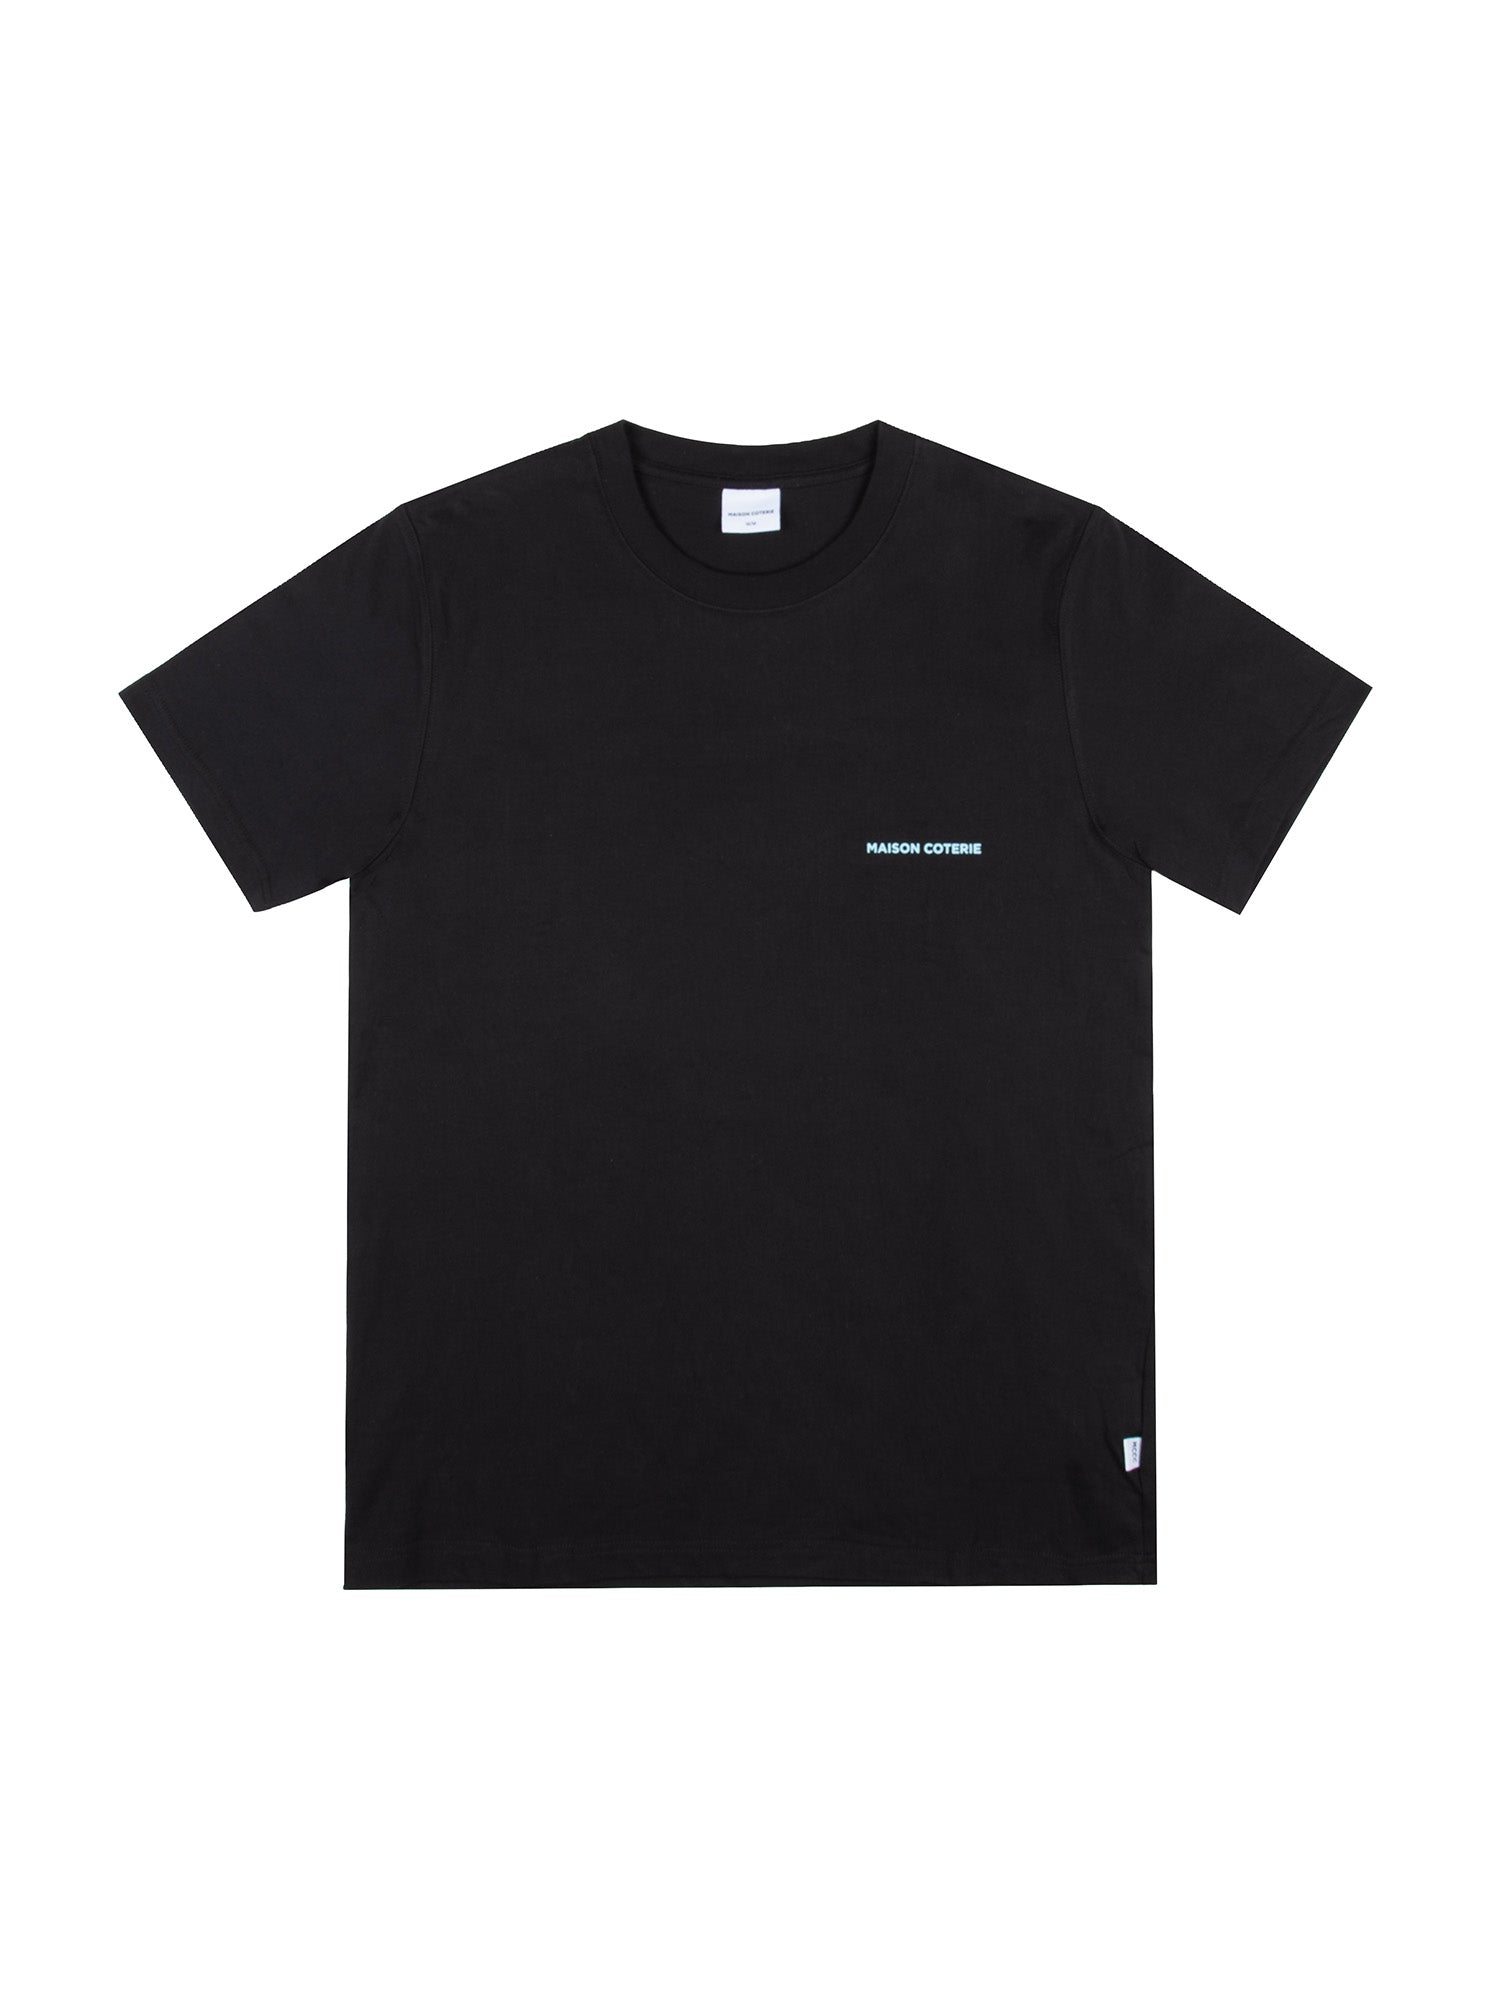 Asher - T-shirt graphique - Noir